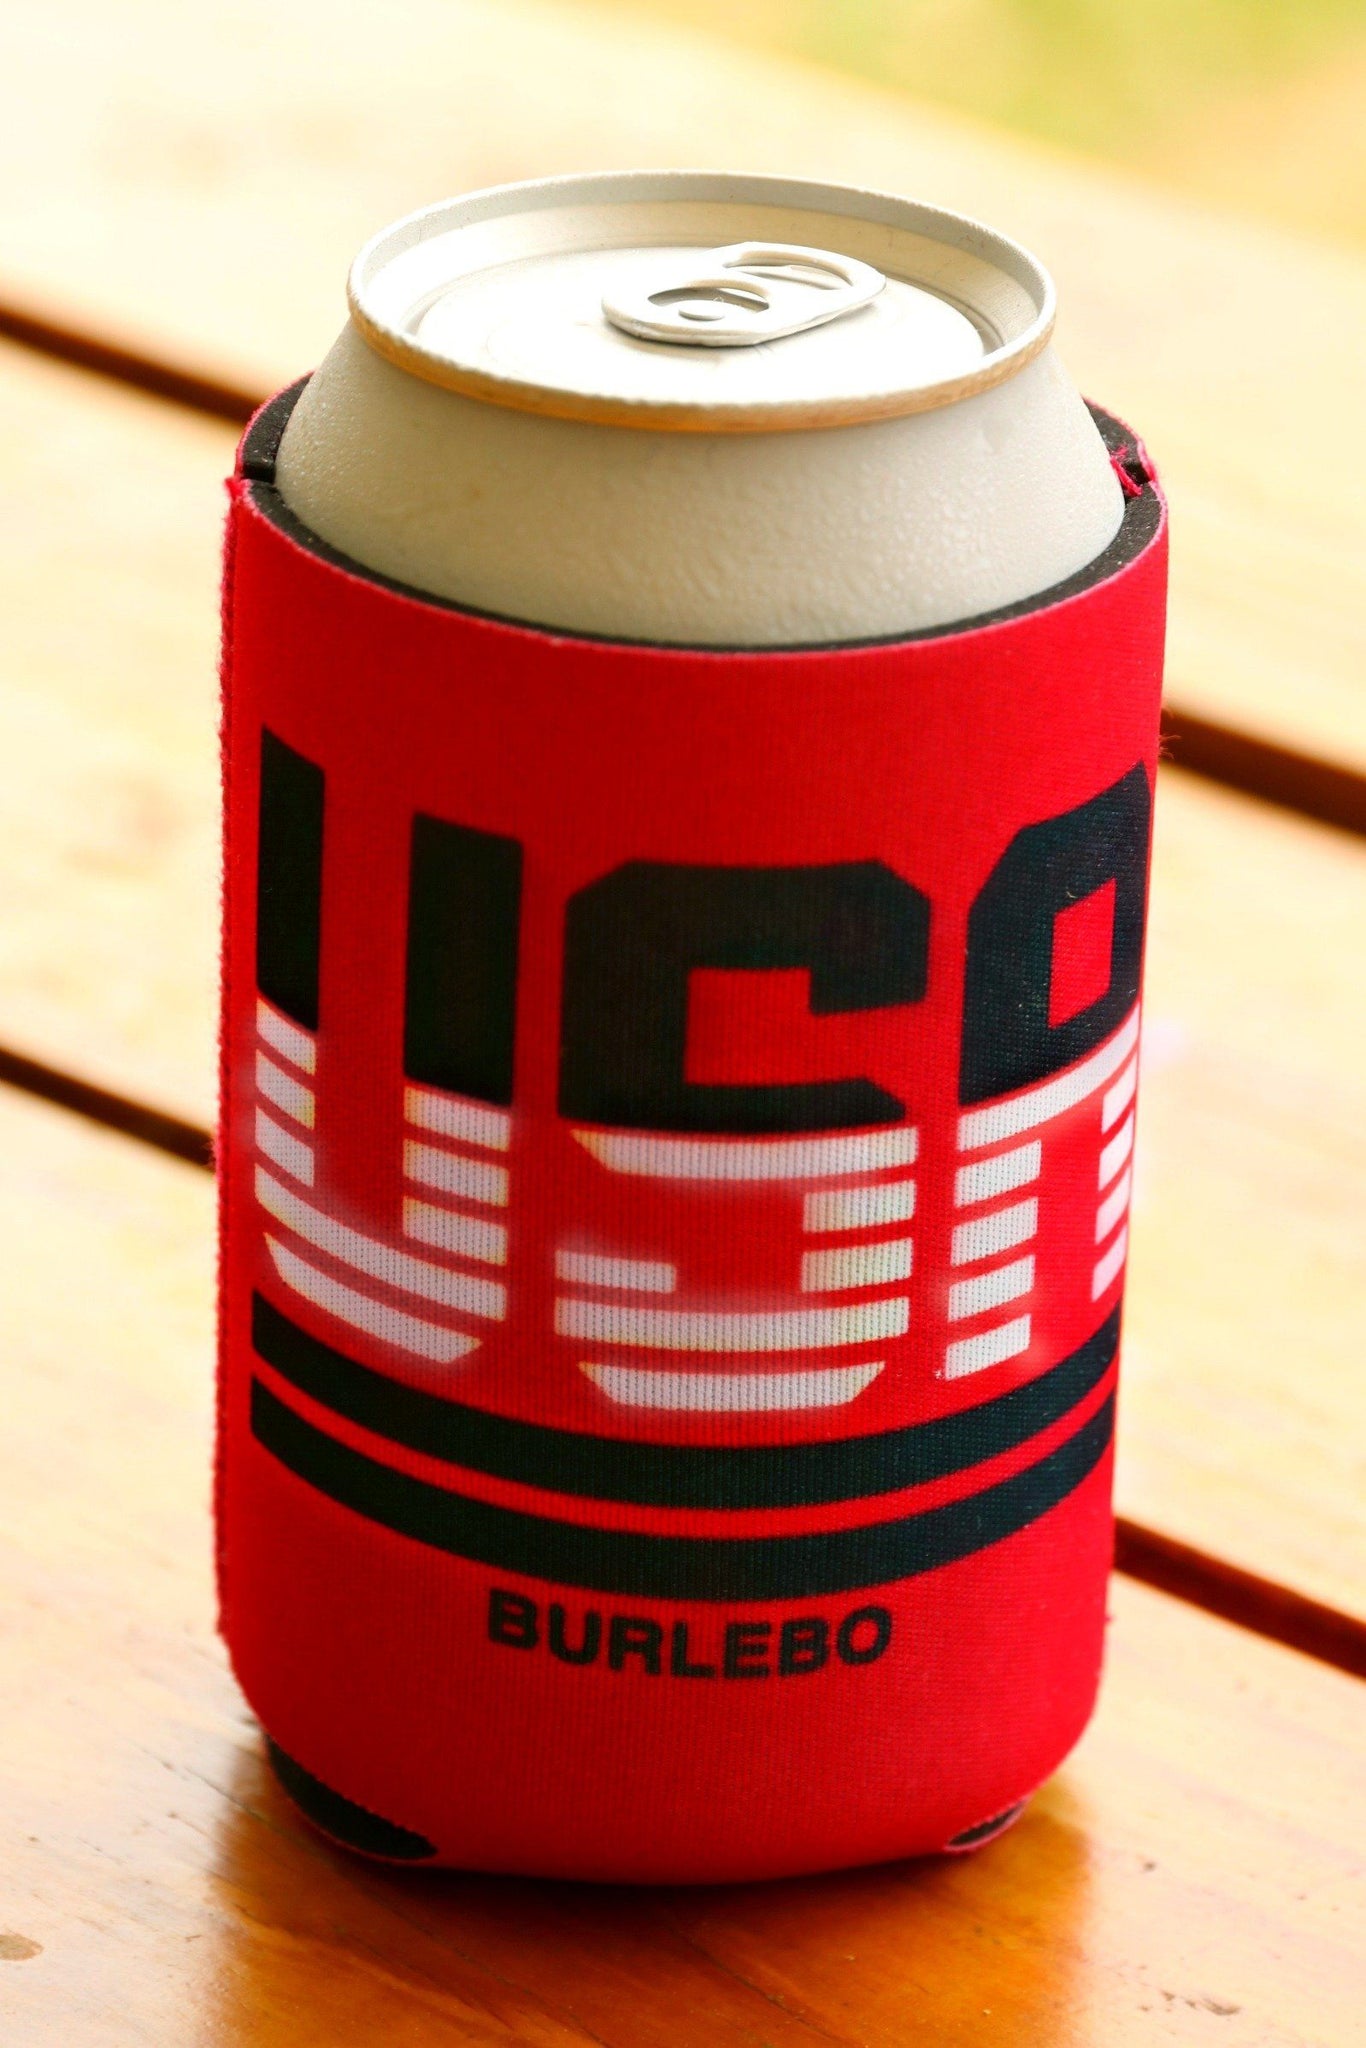 USA Burlebo Can Cooler